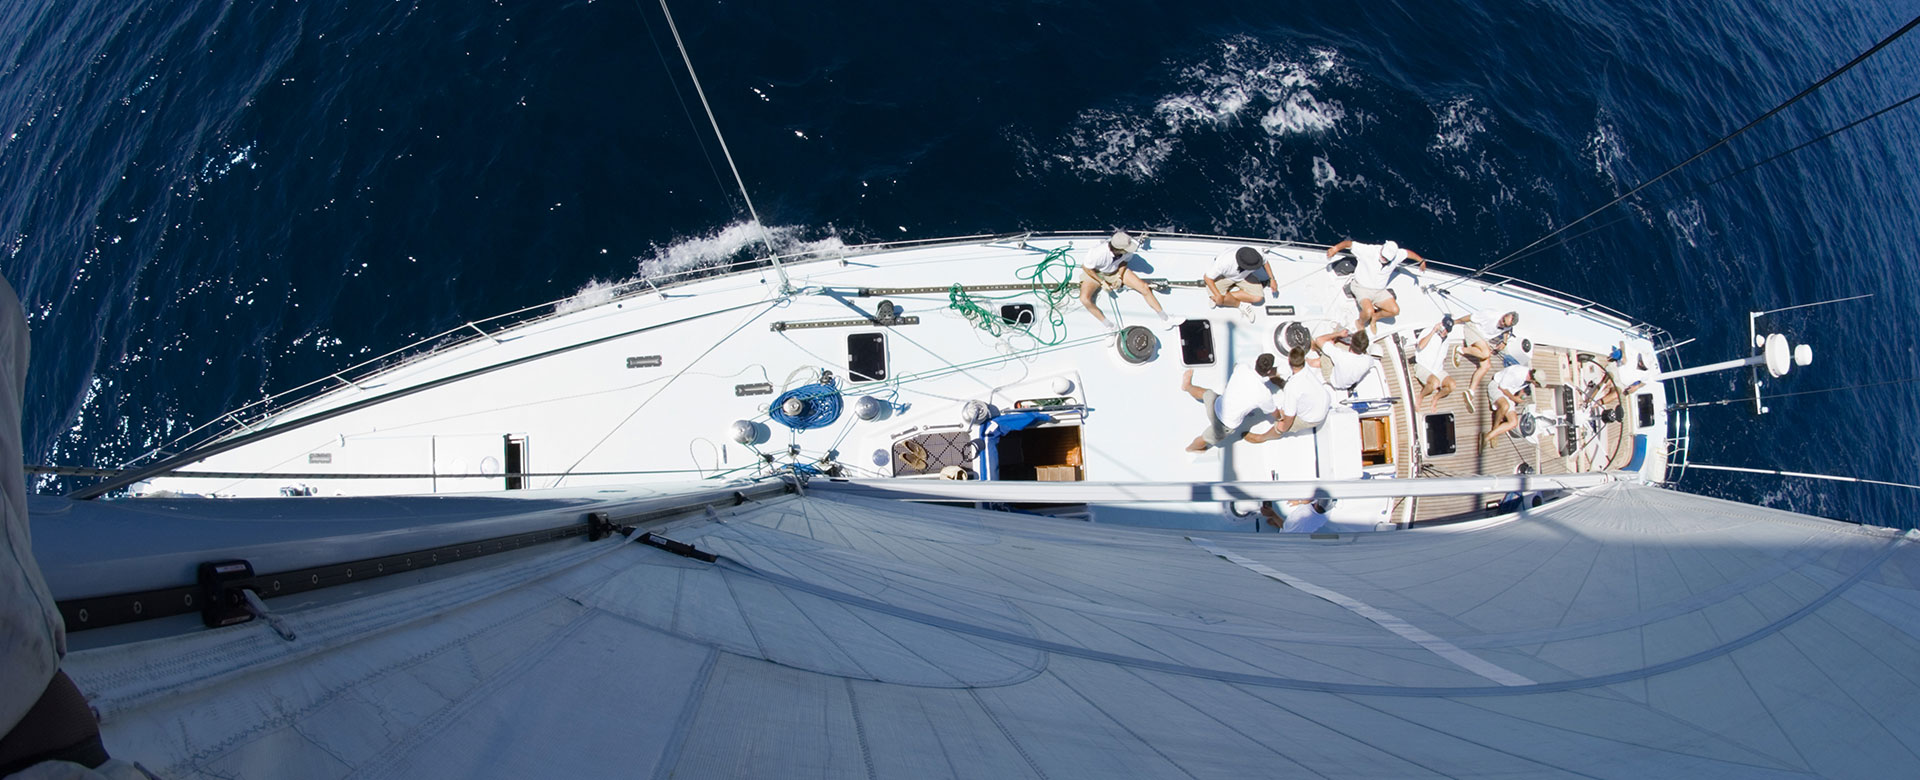 skipper haftpflichtversicherung yachtpool